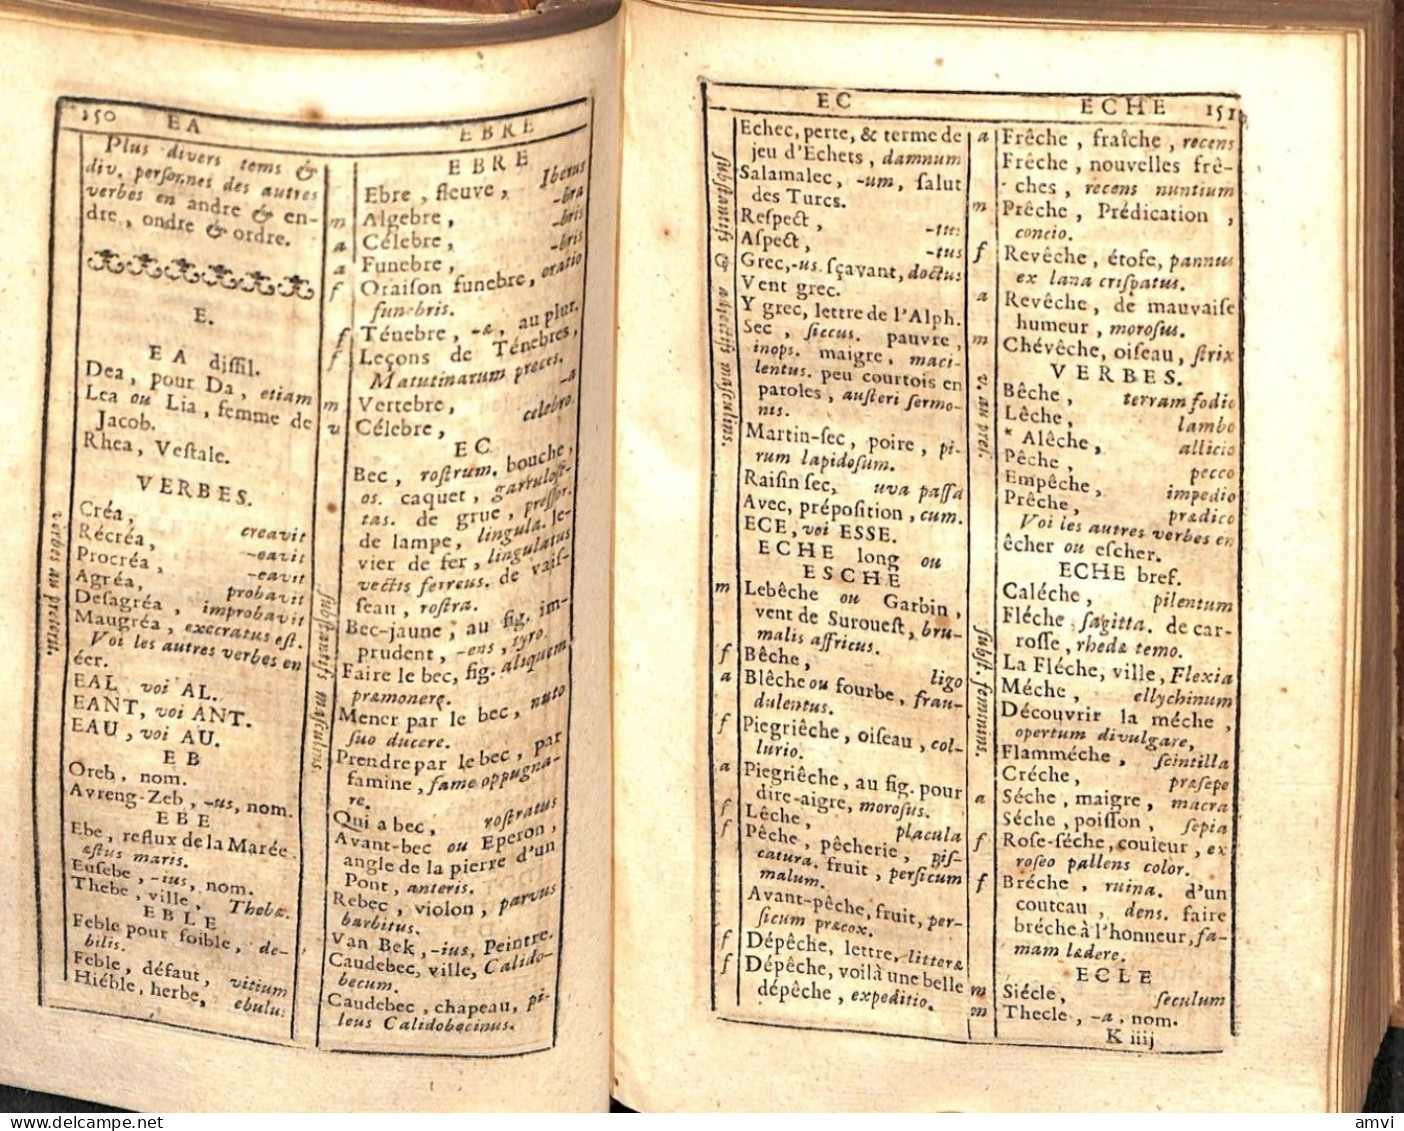 Sa01 - 1721 - RICHELET: DICTIONAIRE De RIMES Dans Un Nouvel Ordre Ou Se Trouve Les Mots Et Le Genre Des Mots.PARIS - 1701-1800